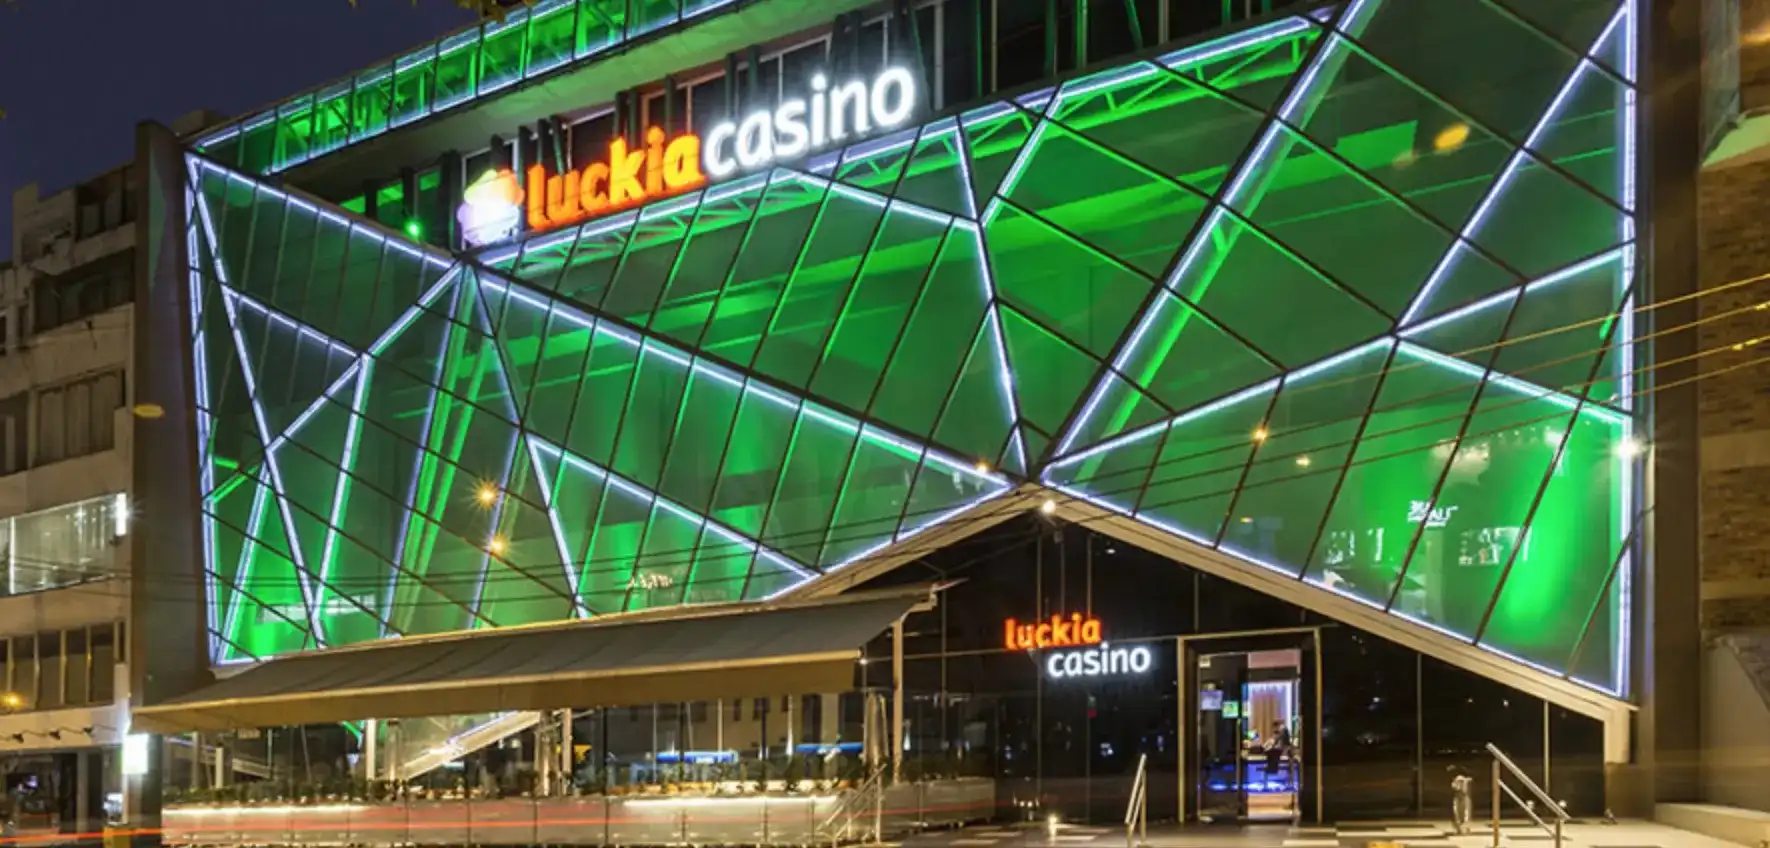 Casino Luckia Bogotá